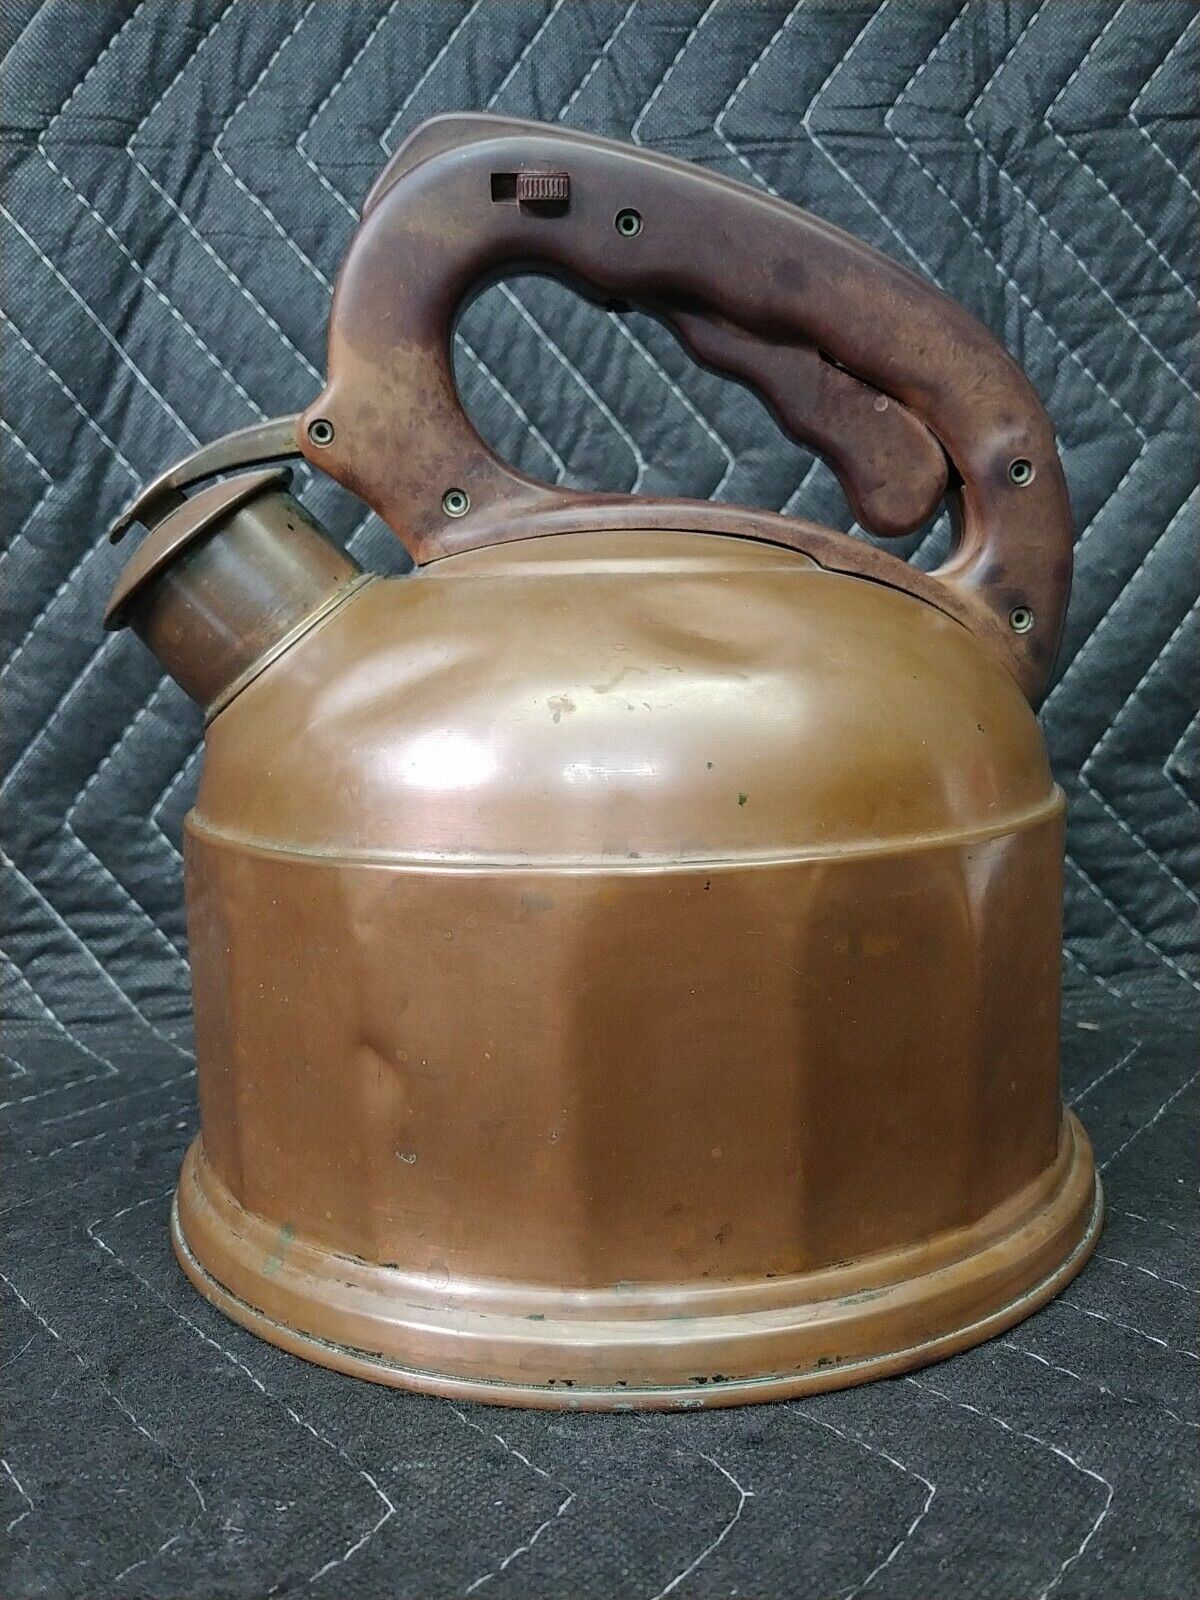 Vintage Luca Kupfer Copper Tea Kettle - Bakelite Handle - Made in Germany